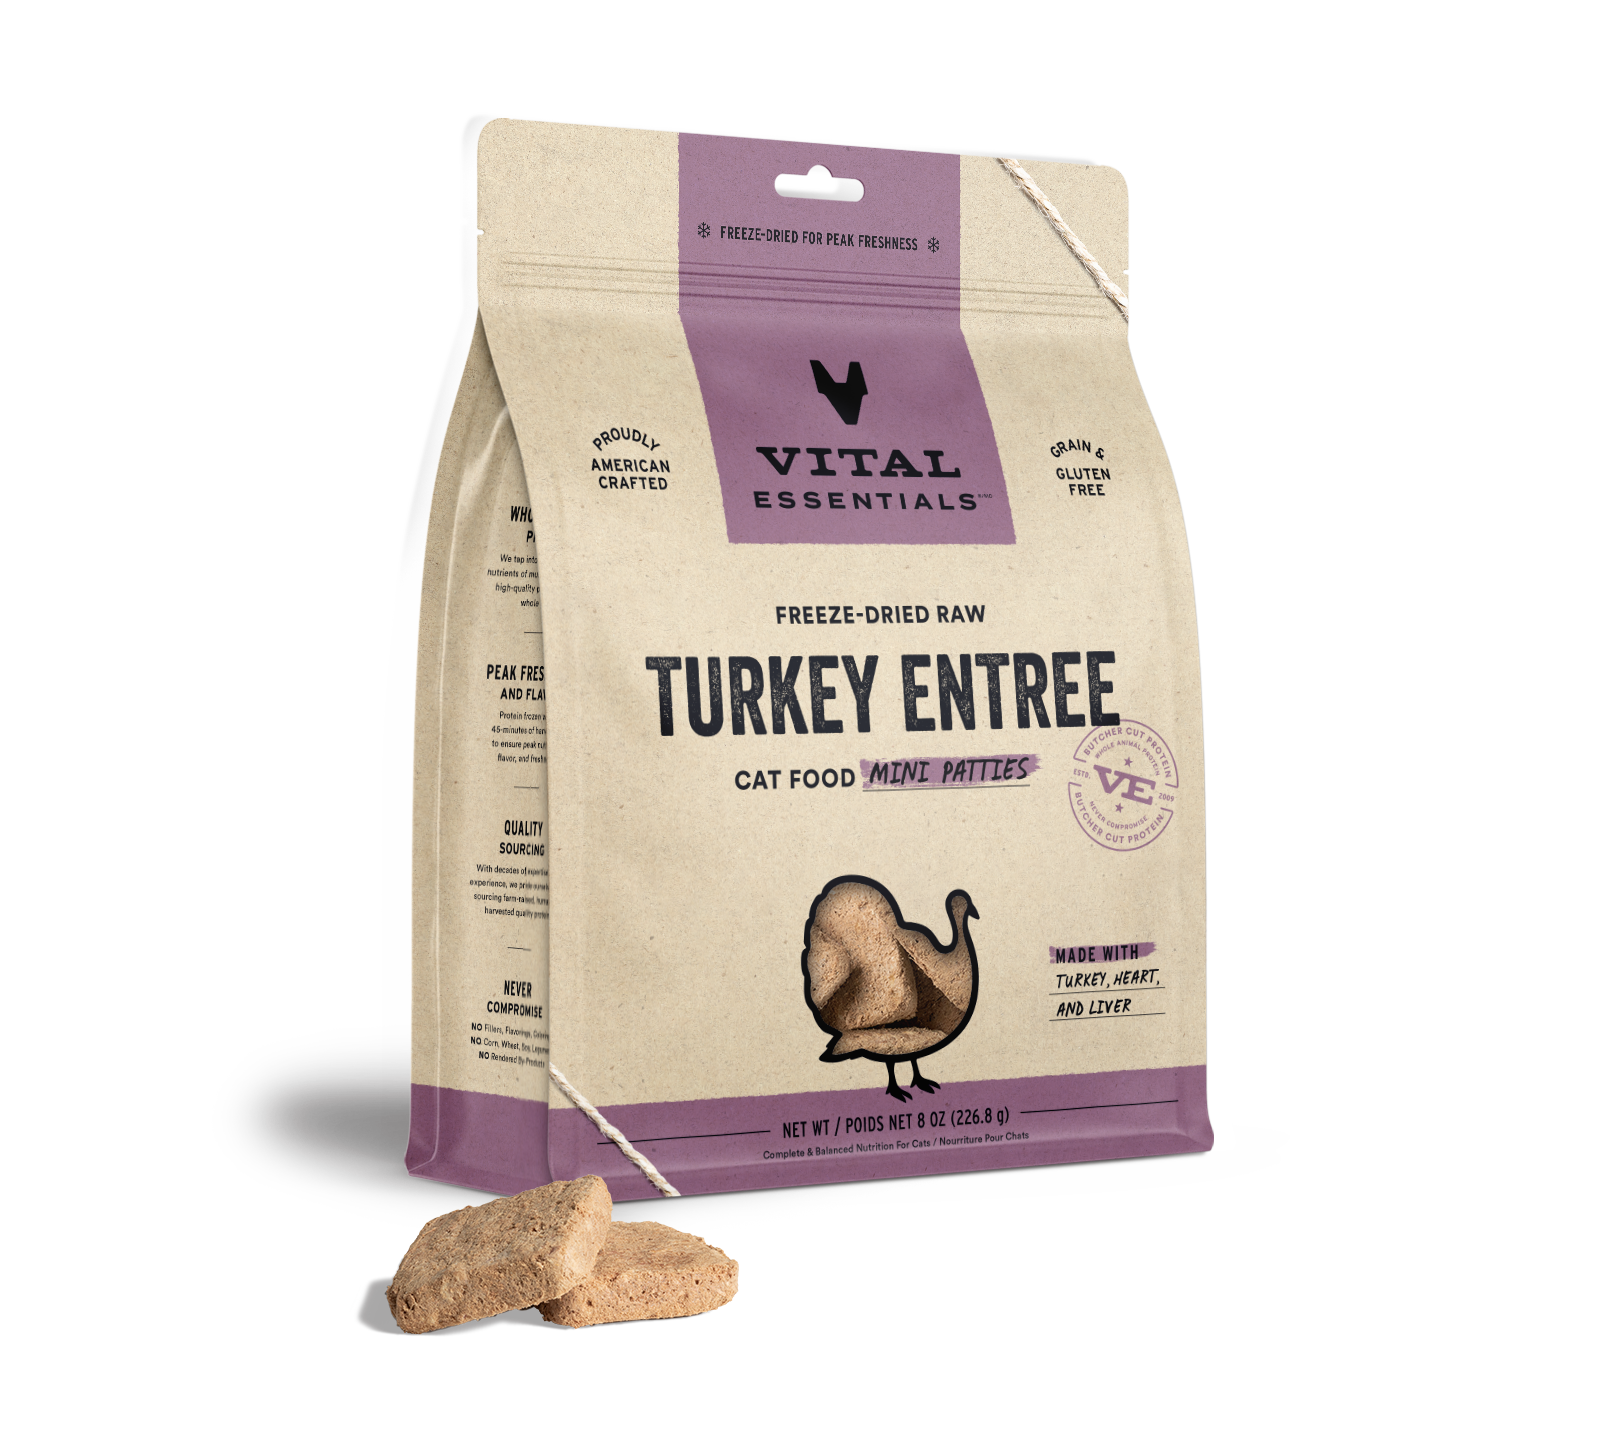 Vital Essentials Freeze-Dried Raw Turkey Entree Cat Food Mini Patties, 8 oz - Food